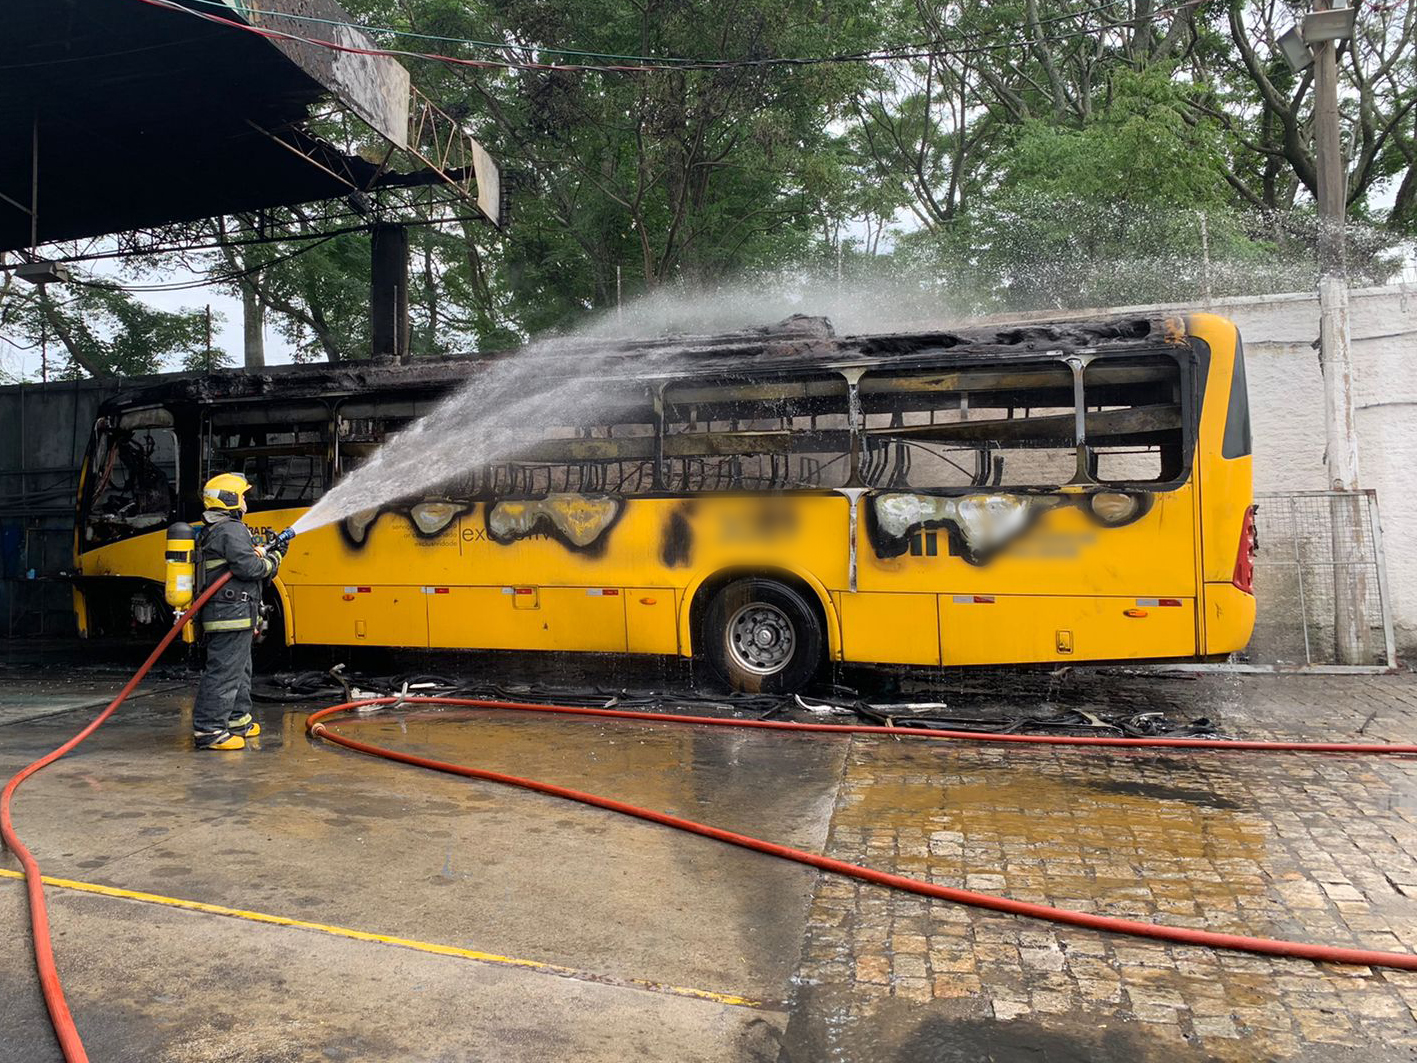 Equipe de plantão em São José combate incêndio em ônibus de transporte coletivo